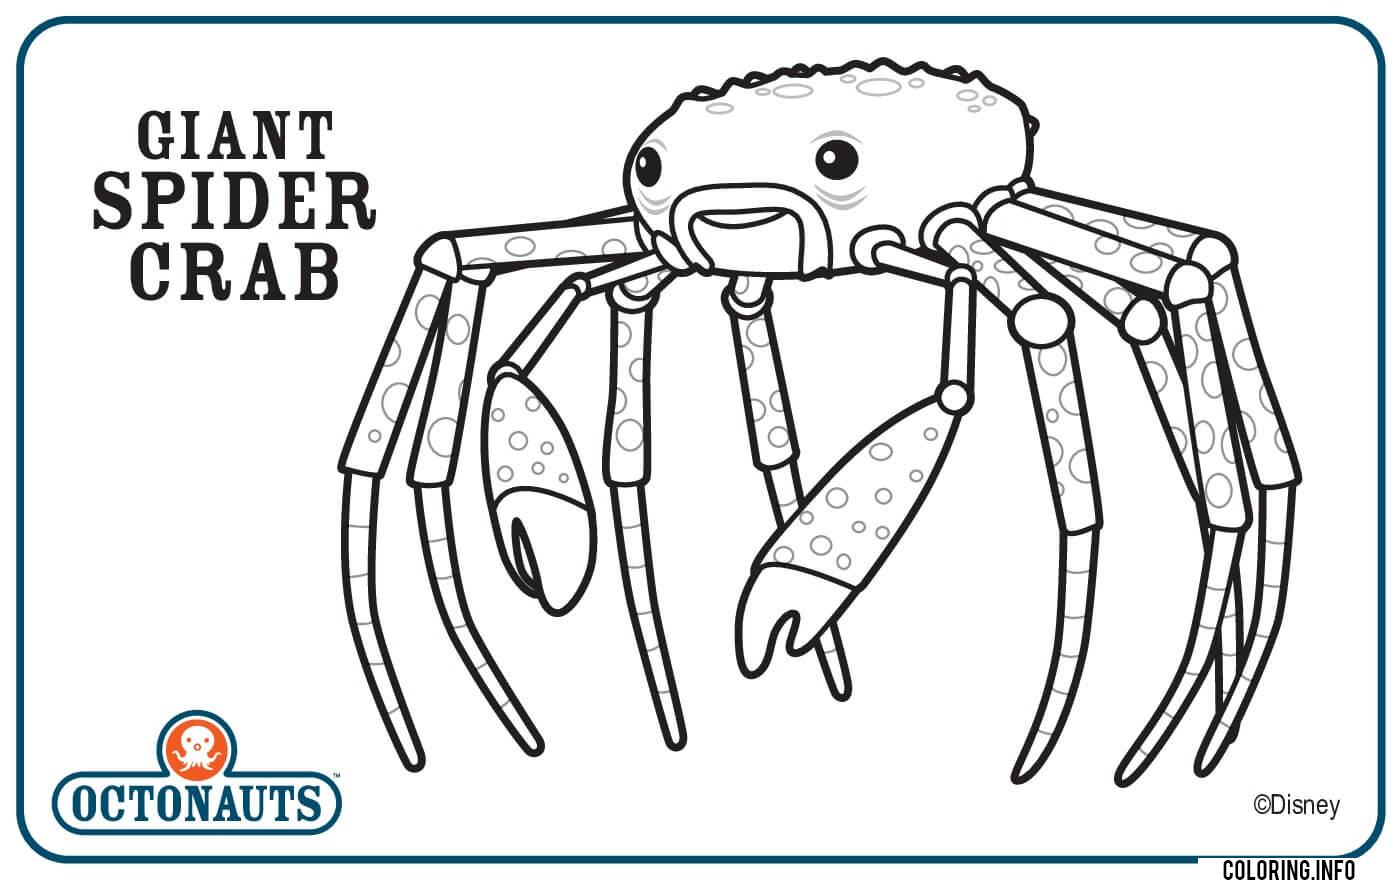 Giant Spider Crab Octonaut Creature coloring